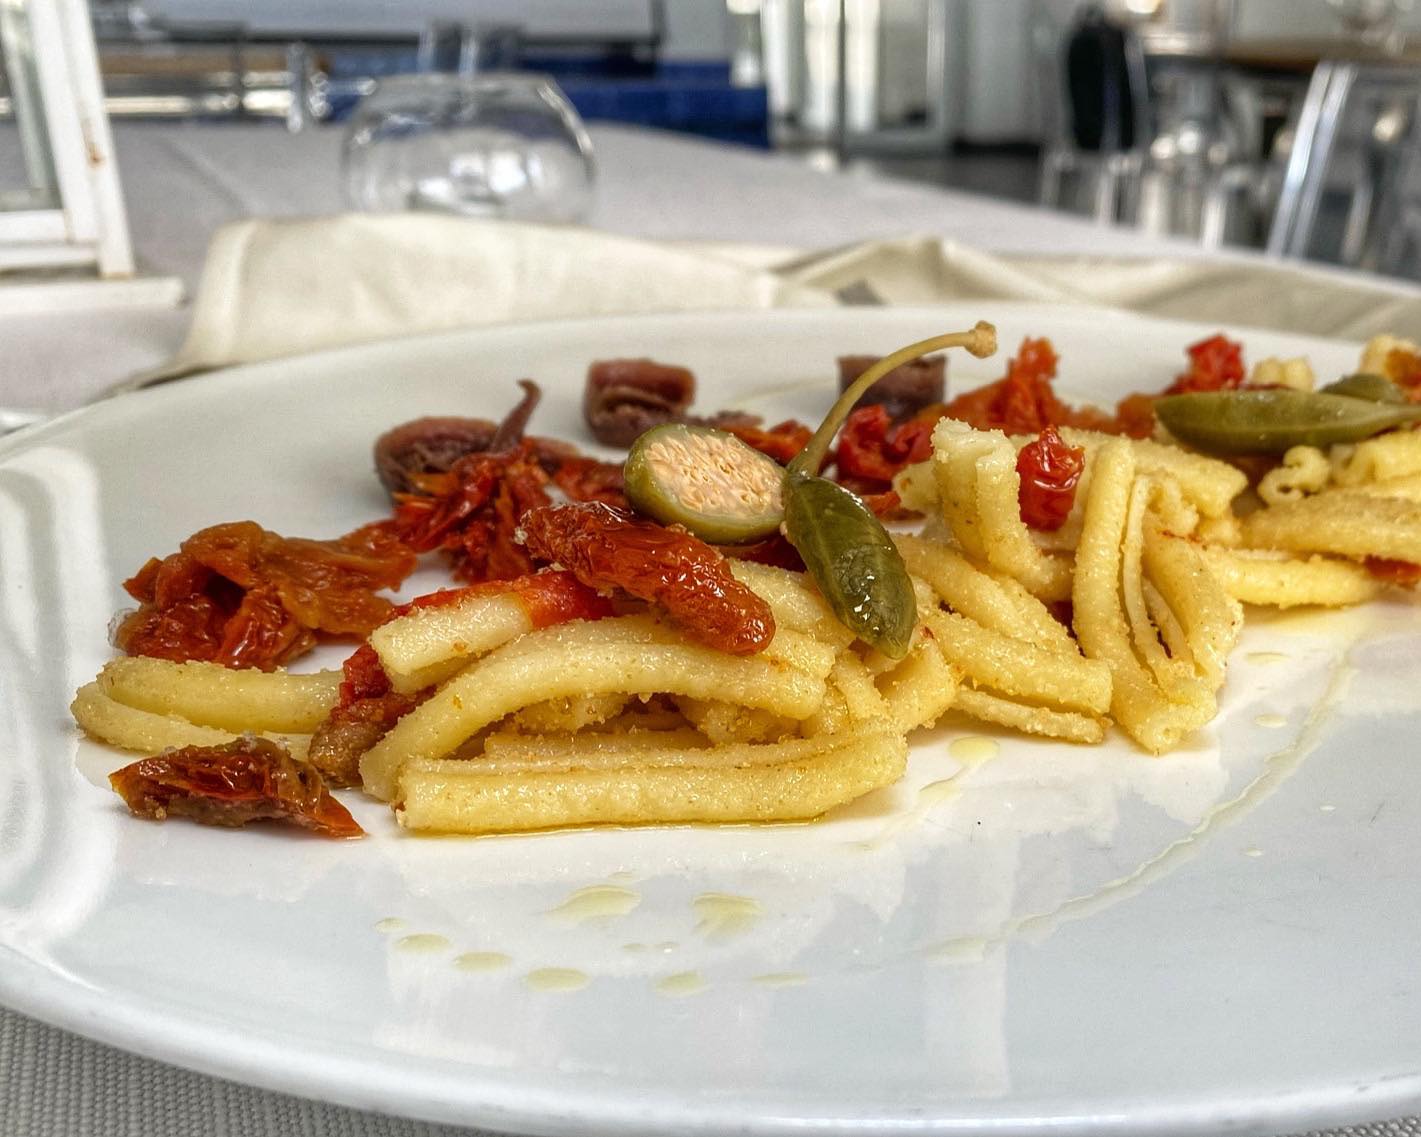 Casarecce Italian Pasta | Gourmet Italian Pasta | homemade Italian Pasta Recipe | Bucatini | Tagliatelle | Casarecce al pesto Recipe | Pasta from Napoli | Artisan Italian Casarecce Pasta